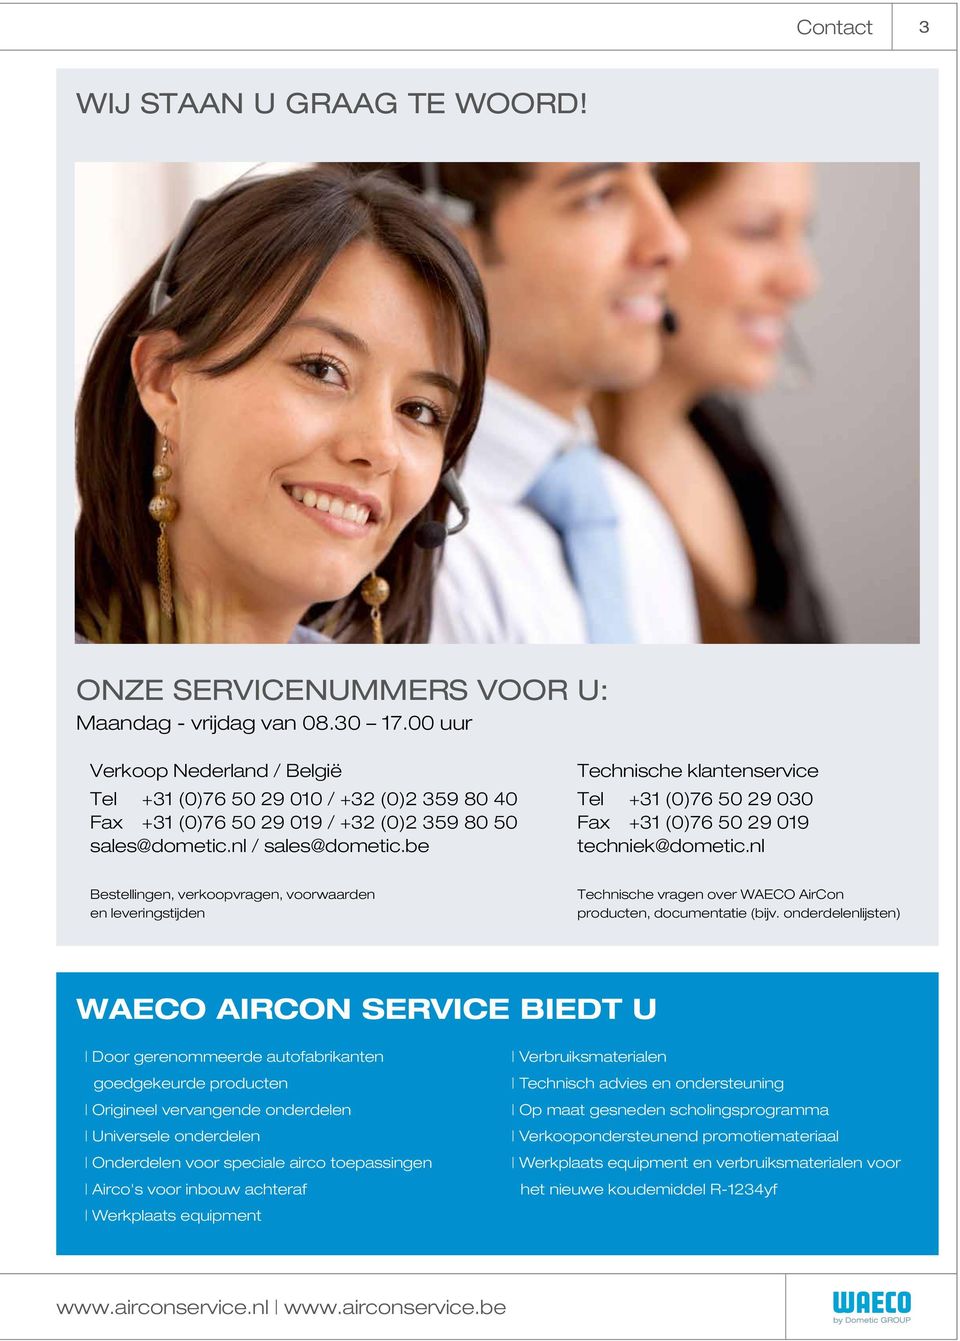 be Technische klantenservice Tel +31 (0)76 50 29 030 Fax +31 (0)76 50 29 019 techniek@dometic.